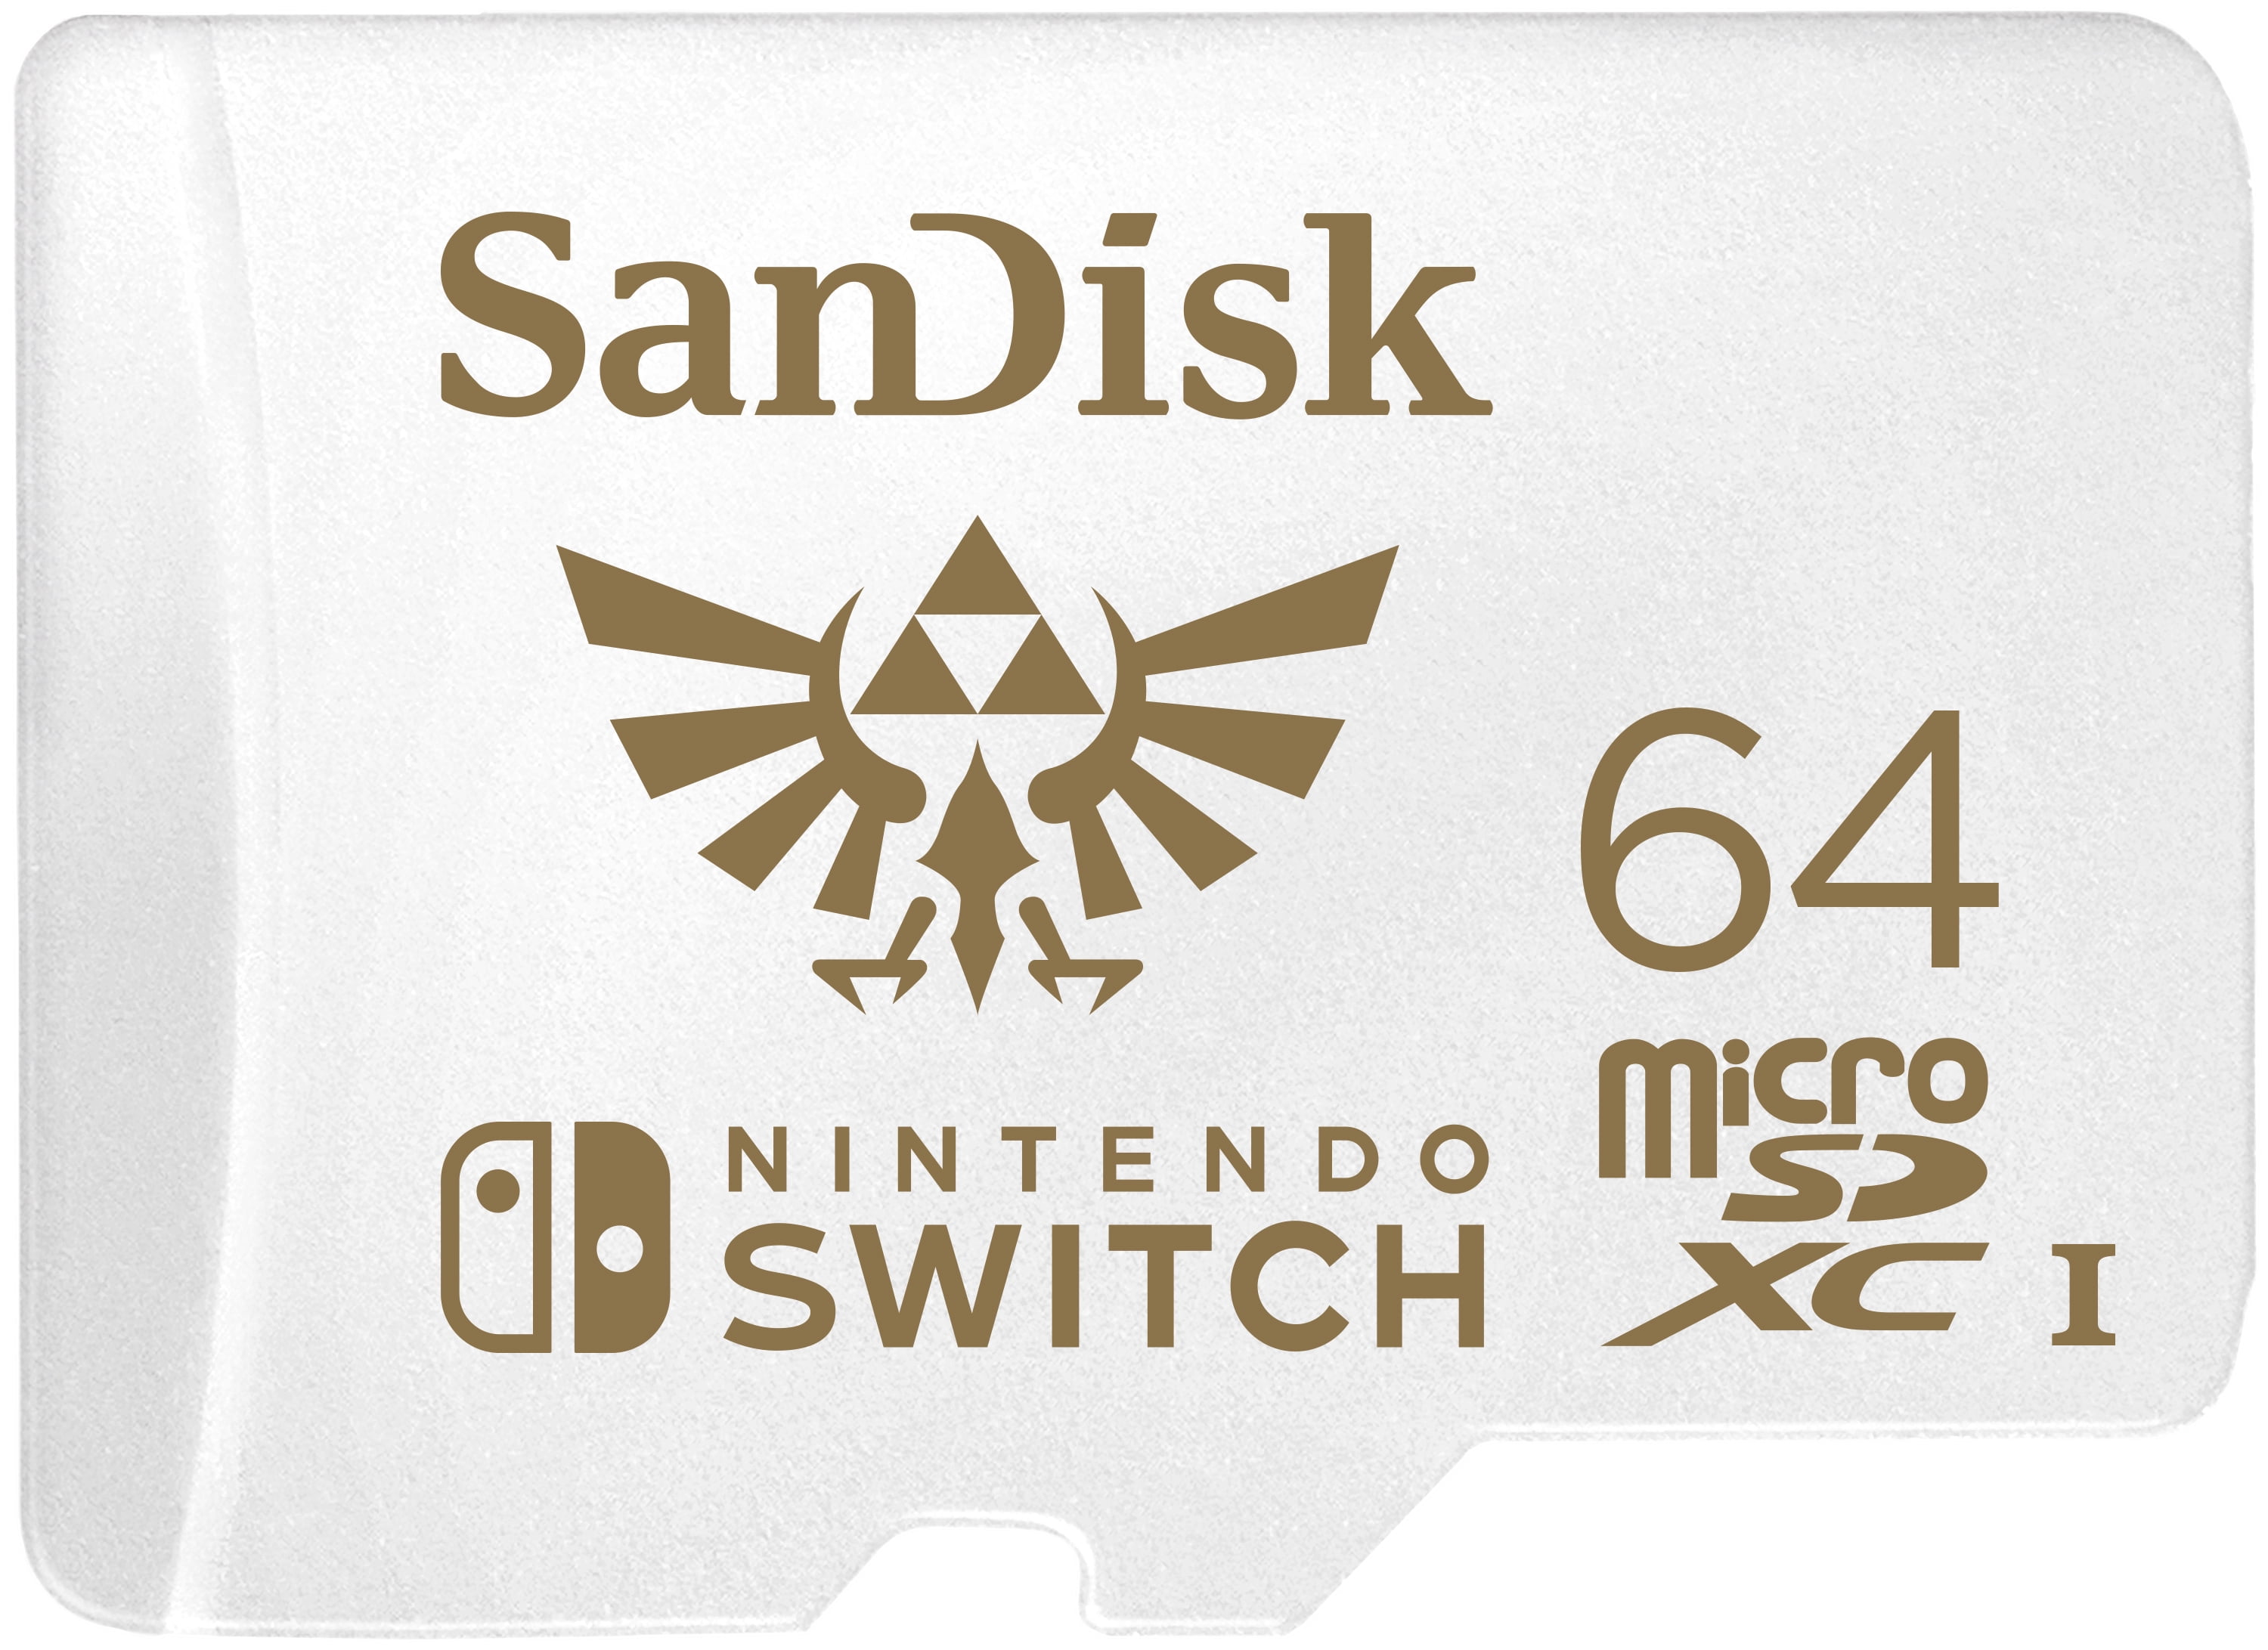  SanDisk 512GB microSDXC-Card, Licensed for